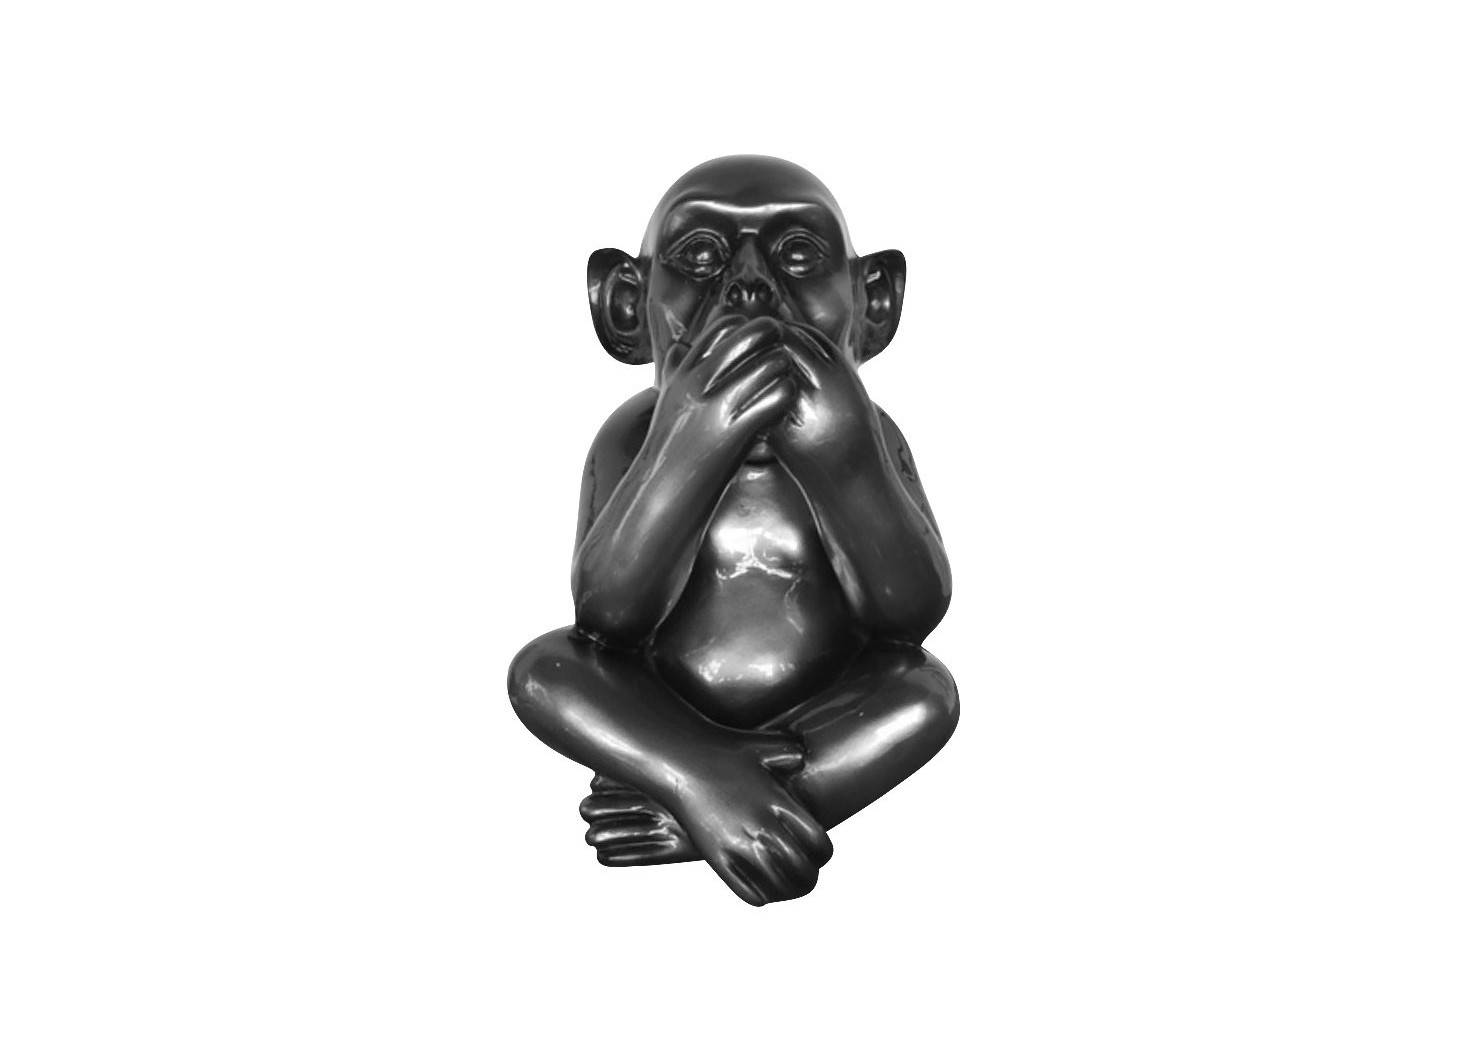 Iwazaru wise monkey statue